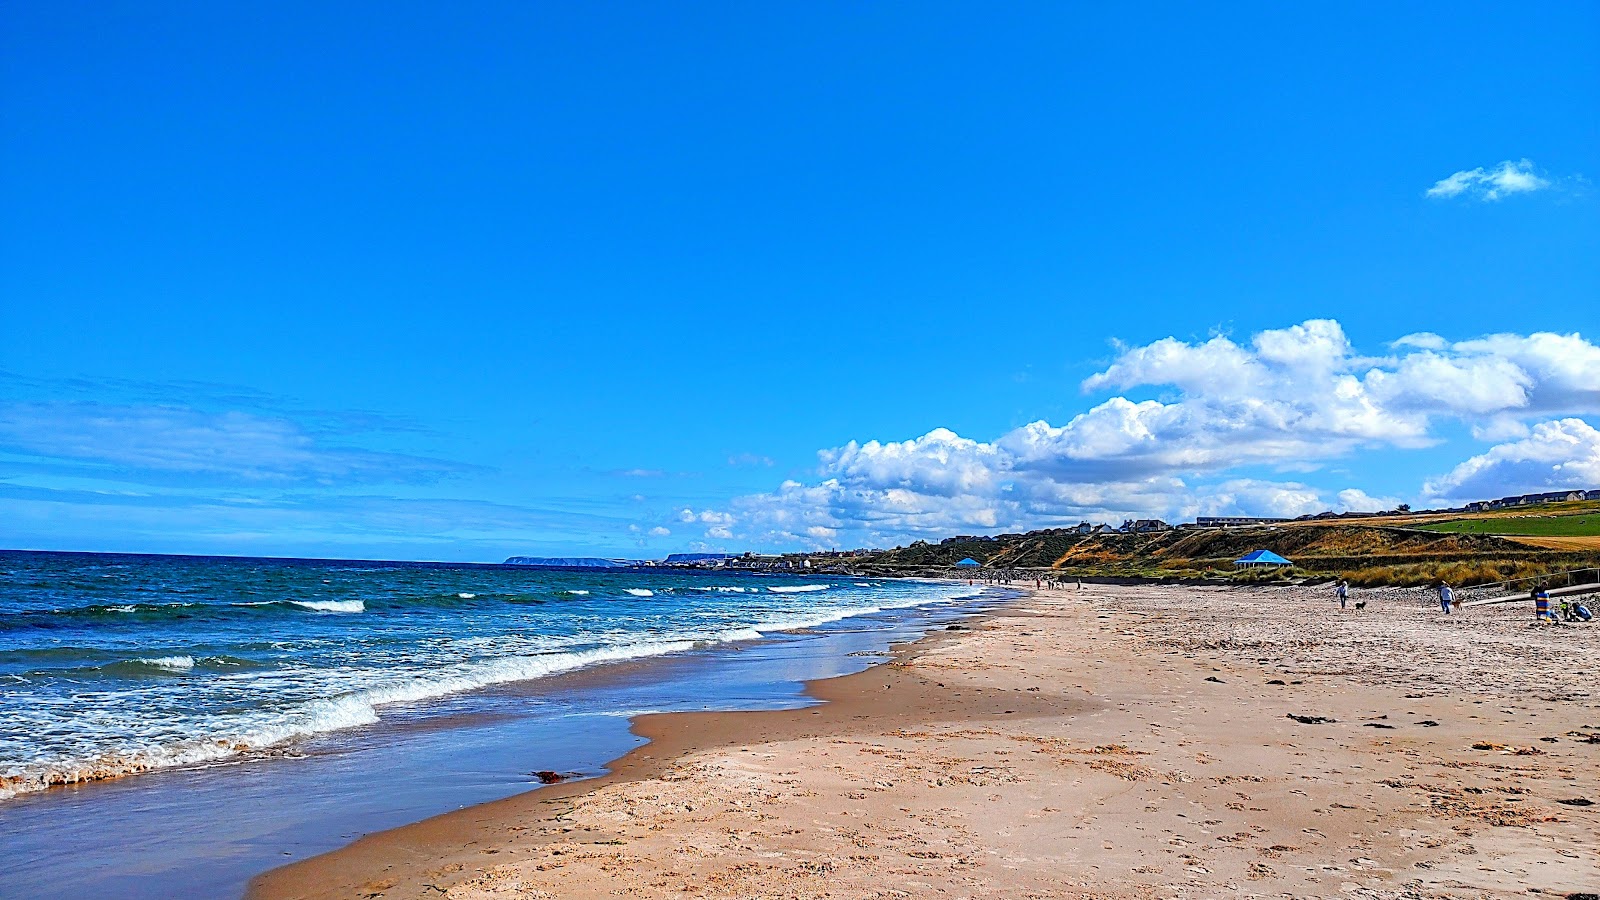 Photo de Boyndie Bay Beach - endroit populaire parmi les connaisseurs de la détente